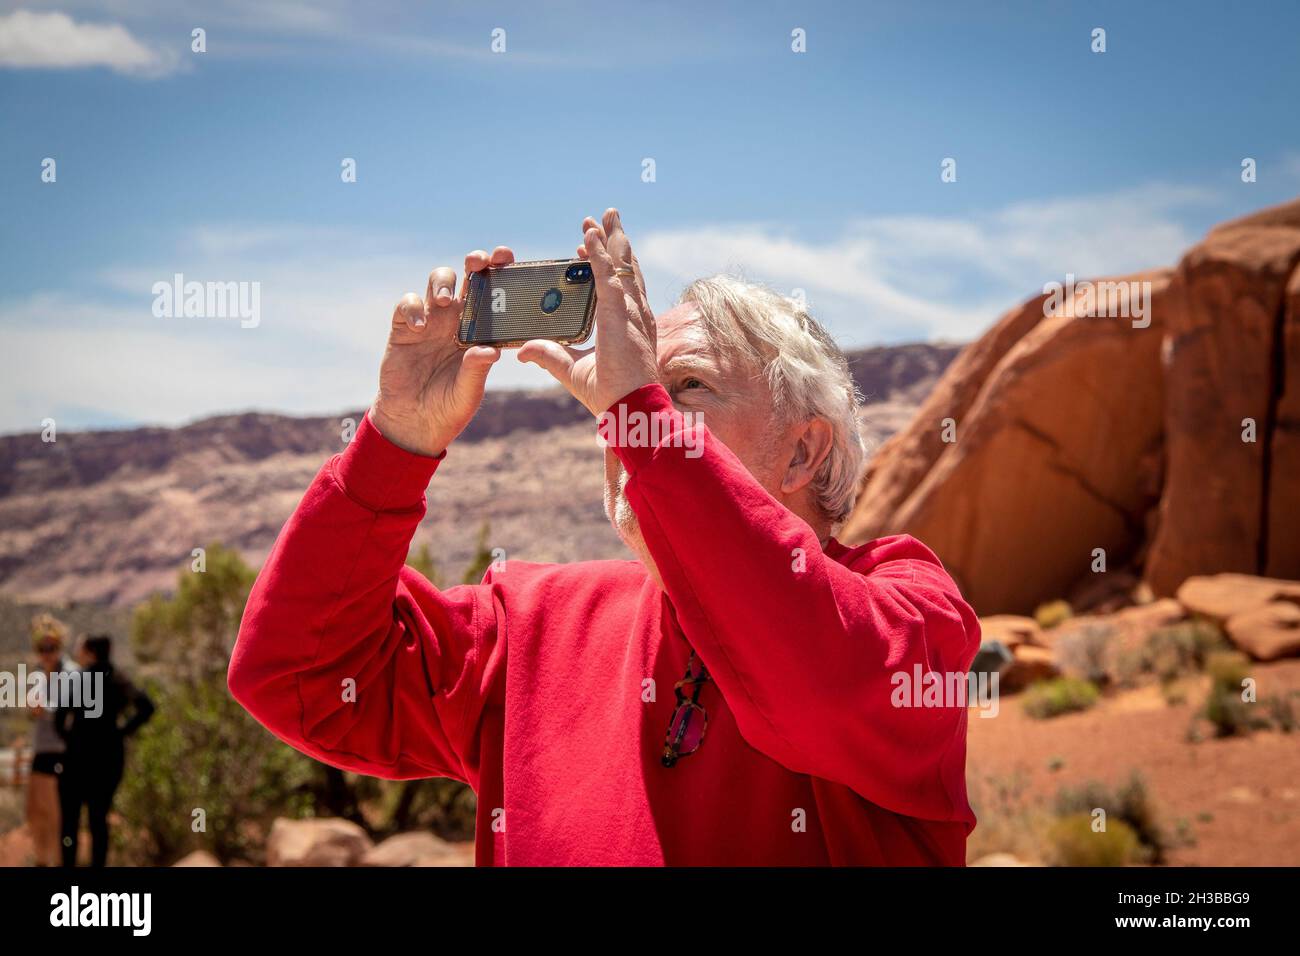 05 23 2021 Arches National Park USA - l'homme senior en chemise rouge prend une photo dans le désert avec un iphone - formation de rocher et d'autres touristes flous Banque D'Images